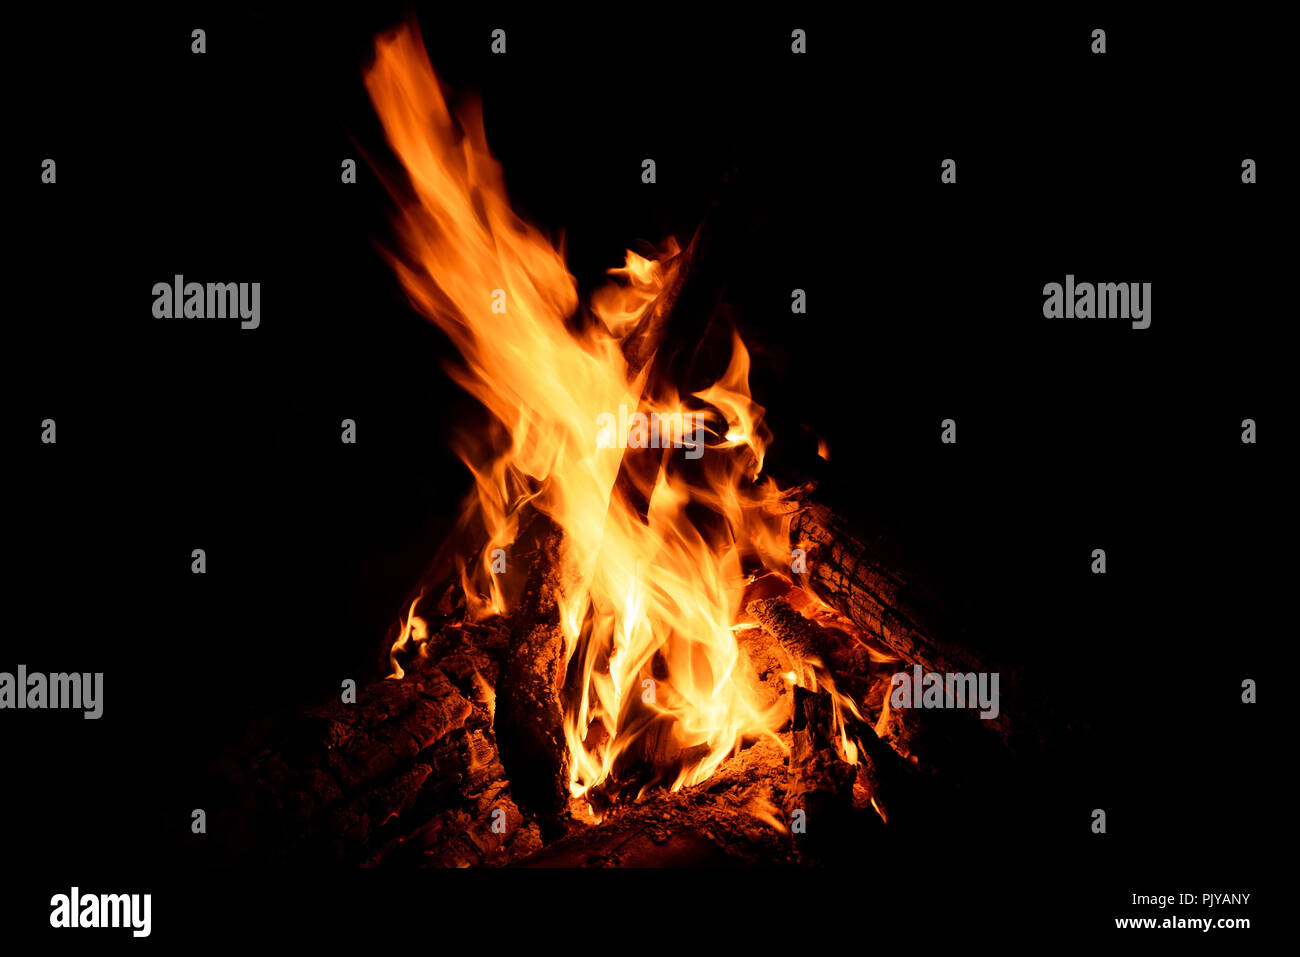 Jaune, rouge et orange des jaillissements de flammes, de charbon et de bois de chauffage dans un incendie d'un feu sur un fond noir Banque D'Images